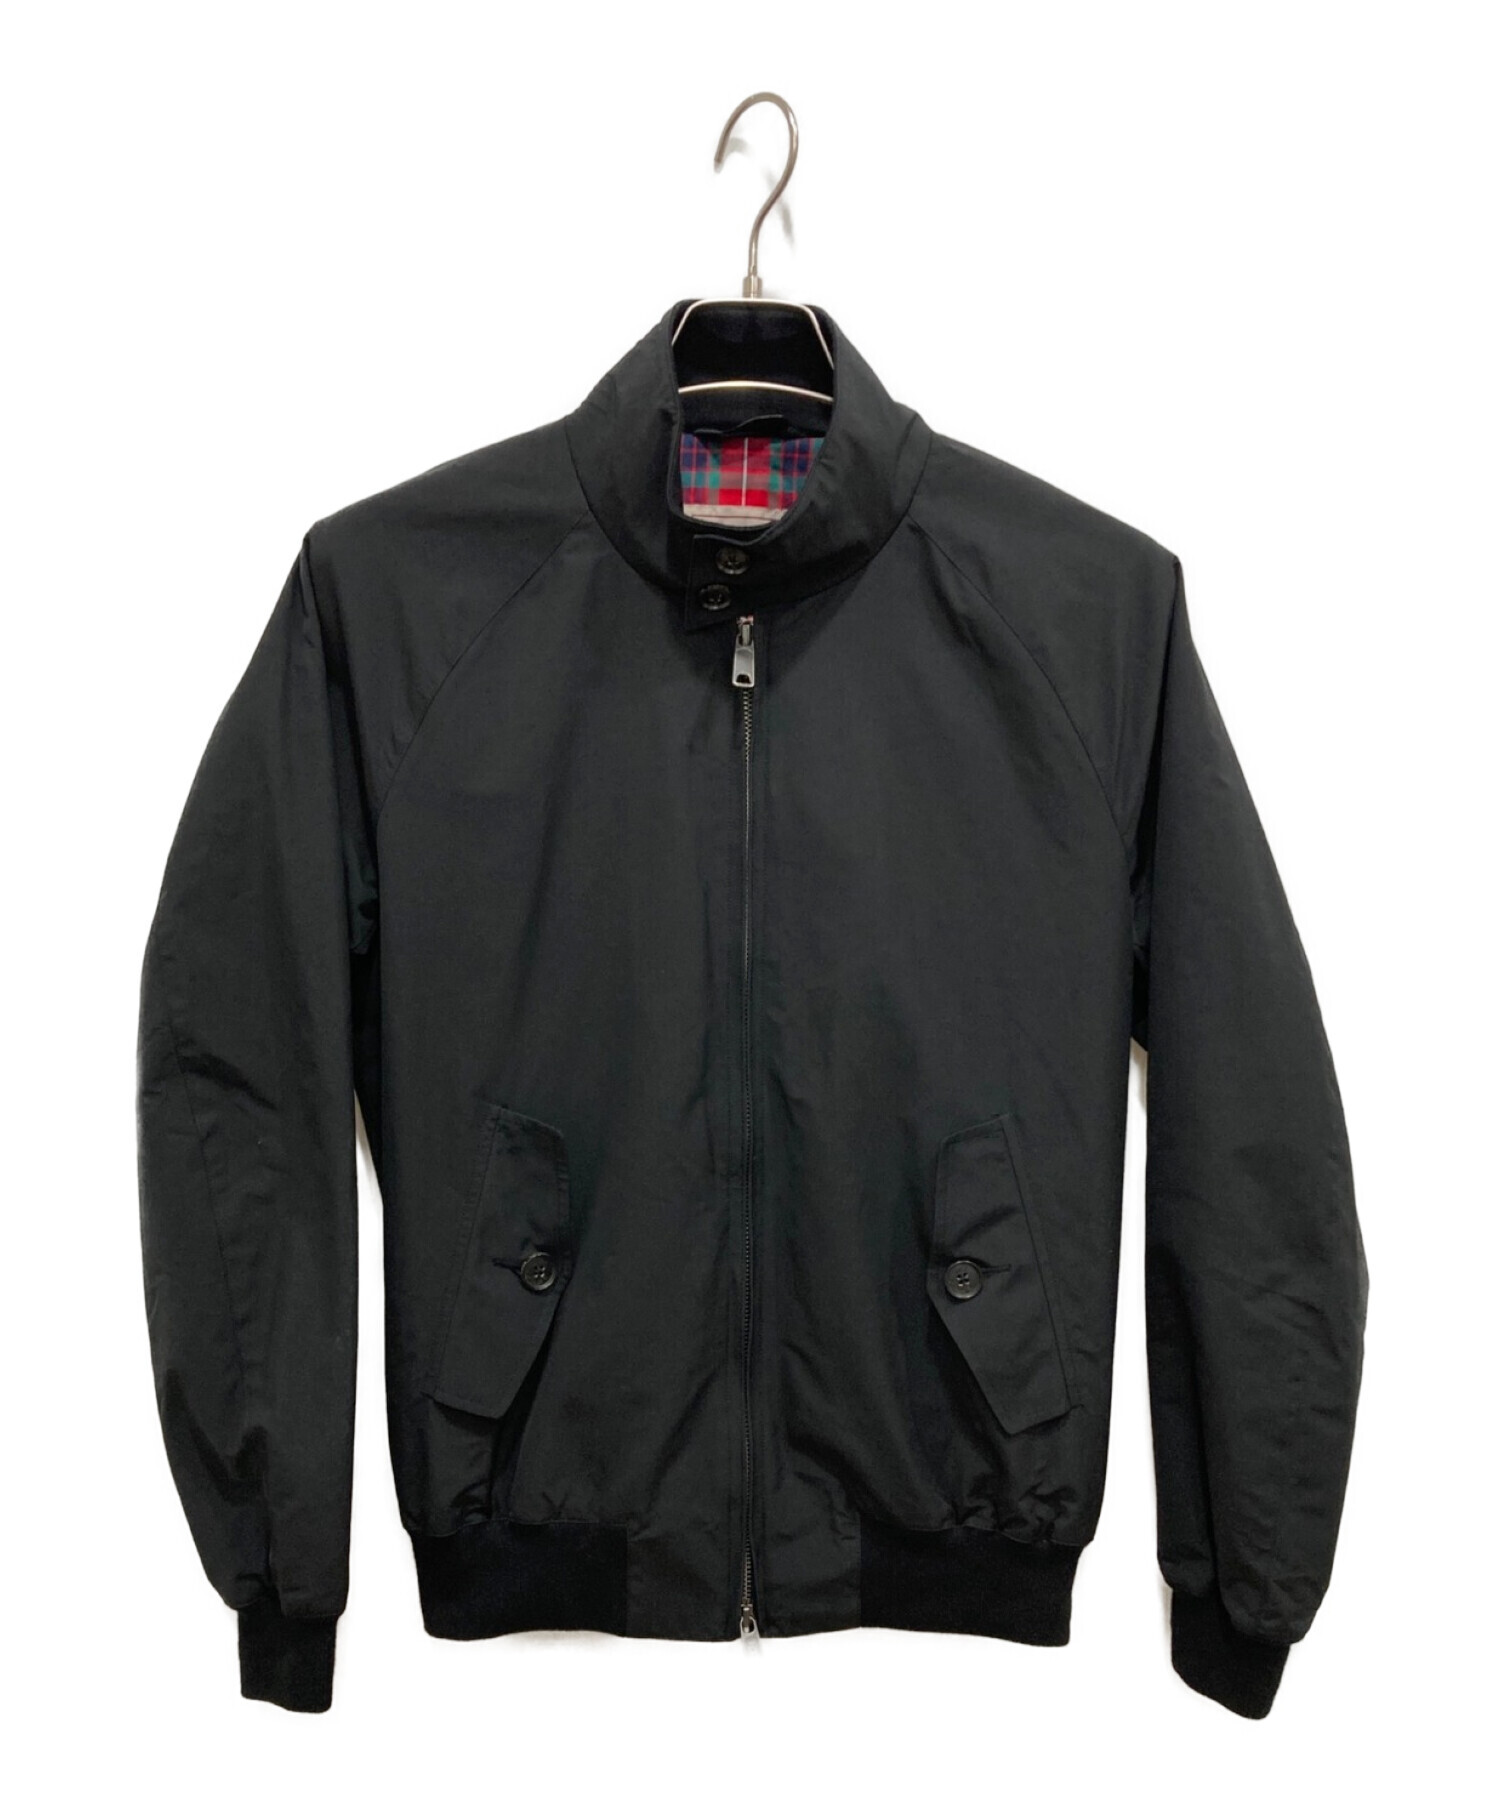 BARACUTA (バラクータ) G9スイングトップジャケット ブラック サイズ:38